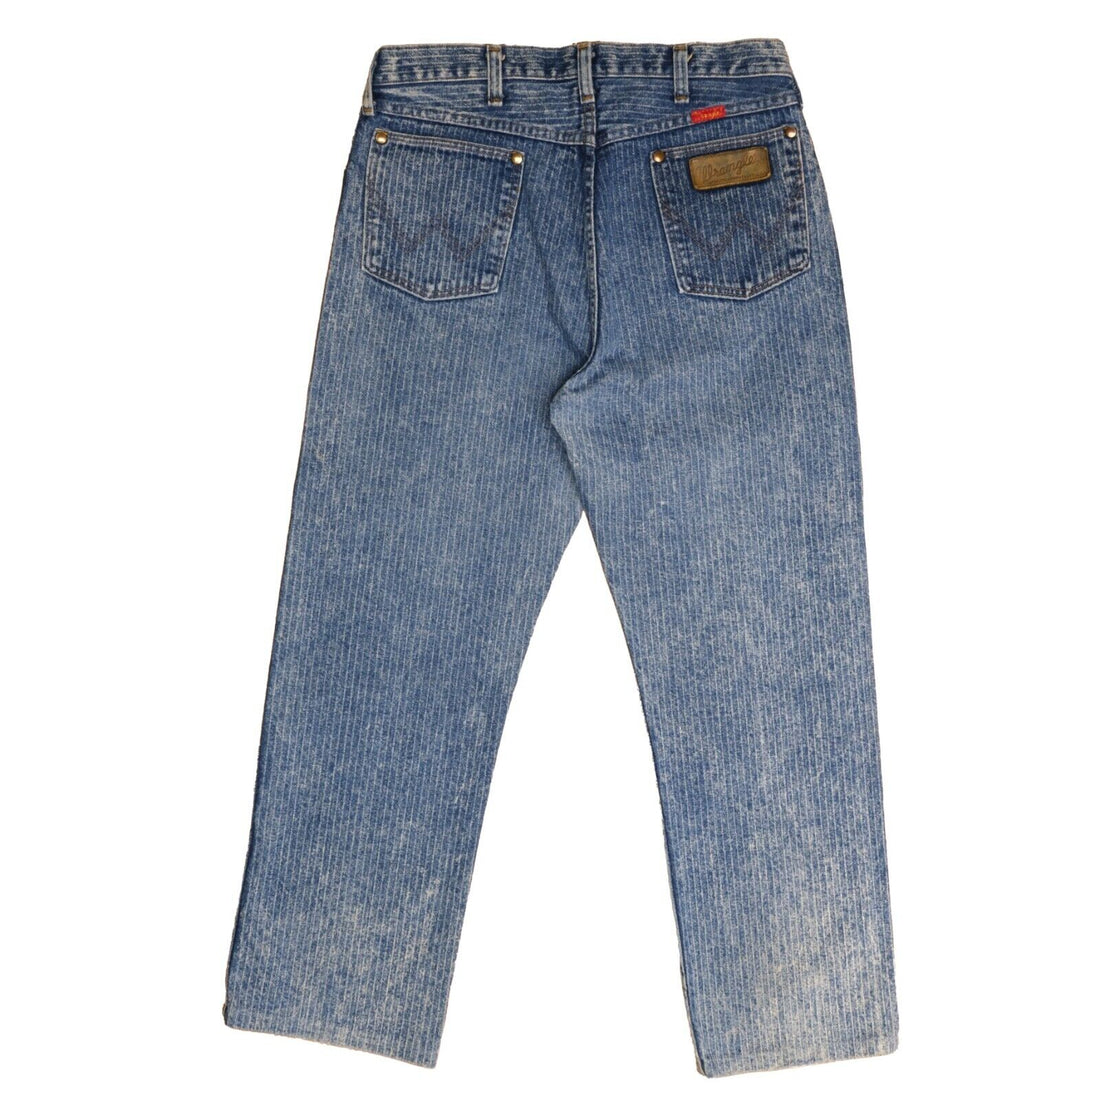 Vintage Wrangler Cowboy Cut Denim Jeans Pants Size 34 X 34 1970s 70s